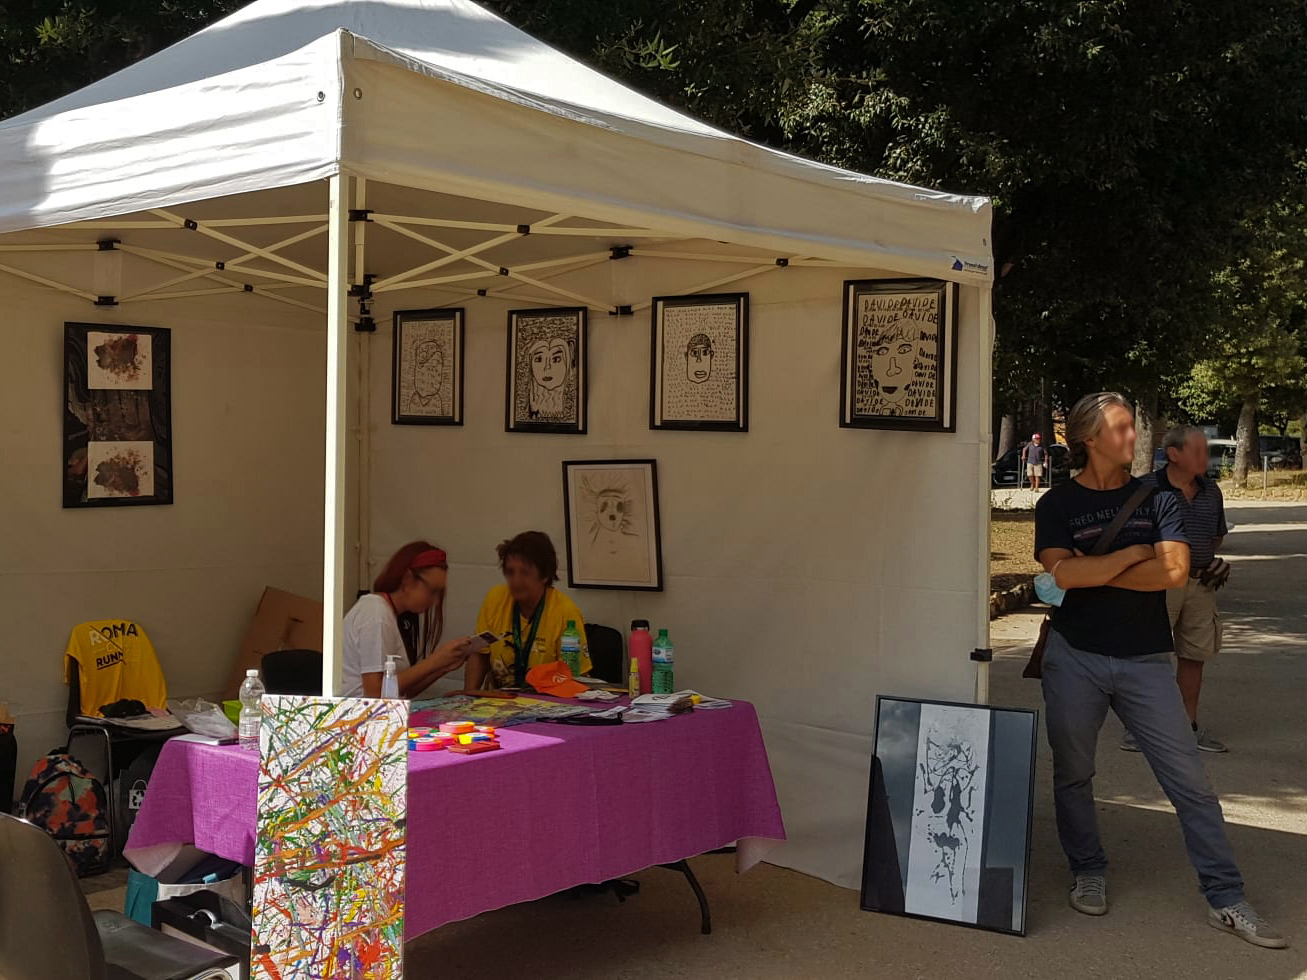 Immagine di un gazebo in occasione di un evento di promozione legato ad Insieme per il bene comune - GDD Italia 2021